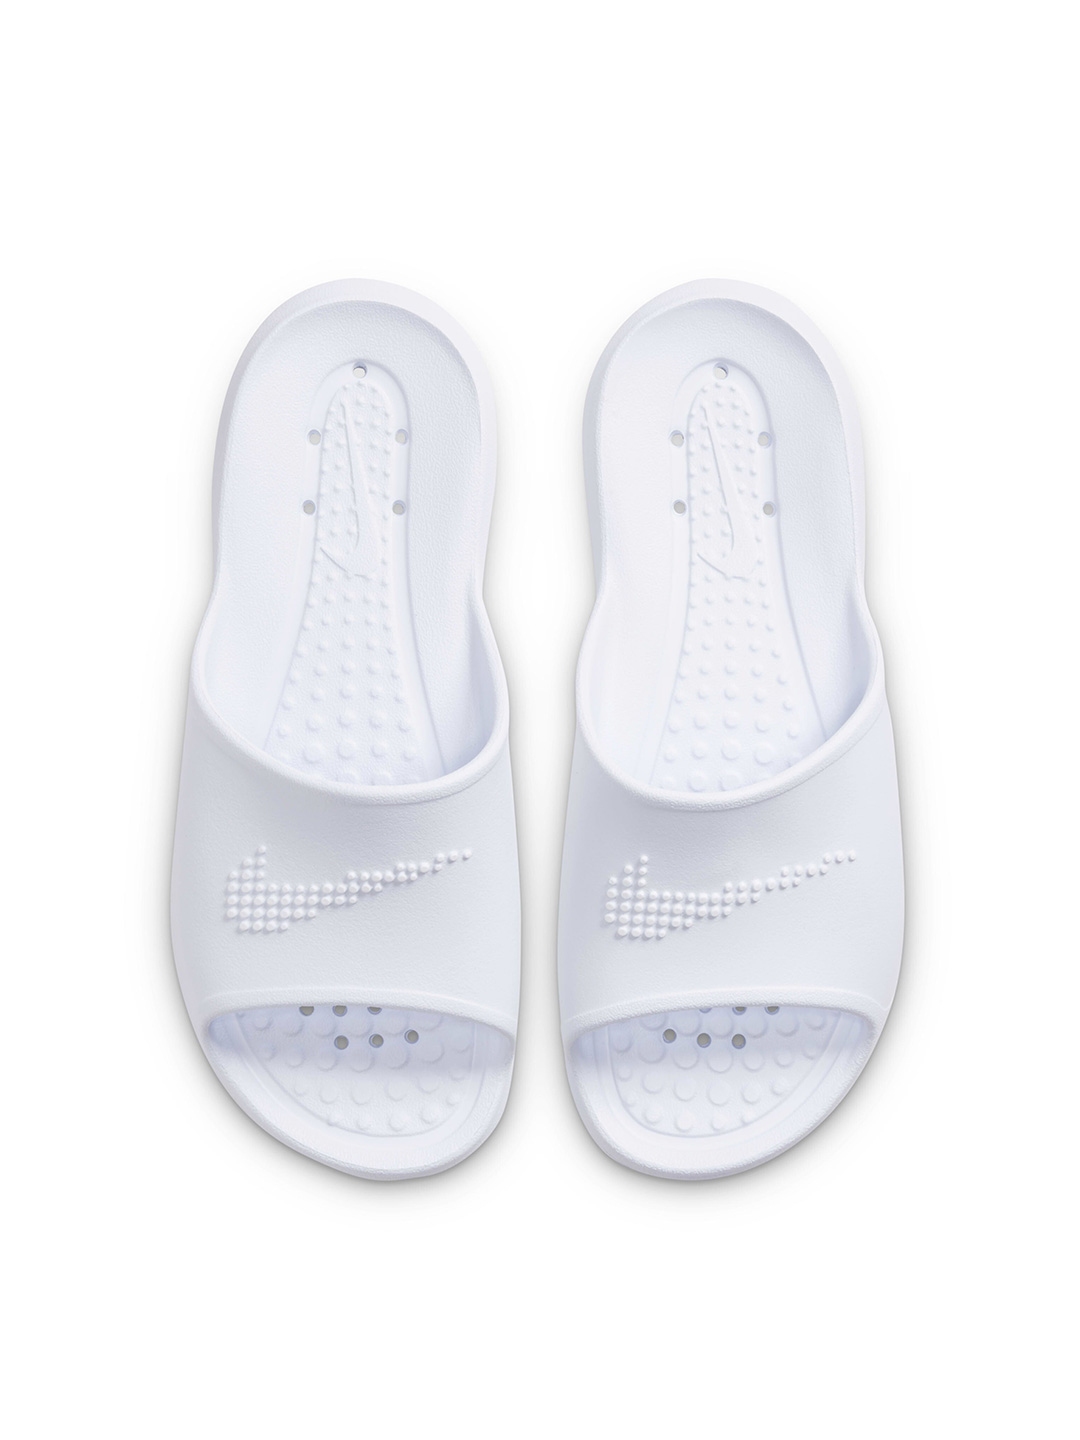 Buy Nike Victori One Women's Shower Slides - Flip Flops for Women ...